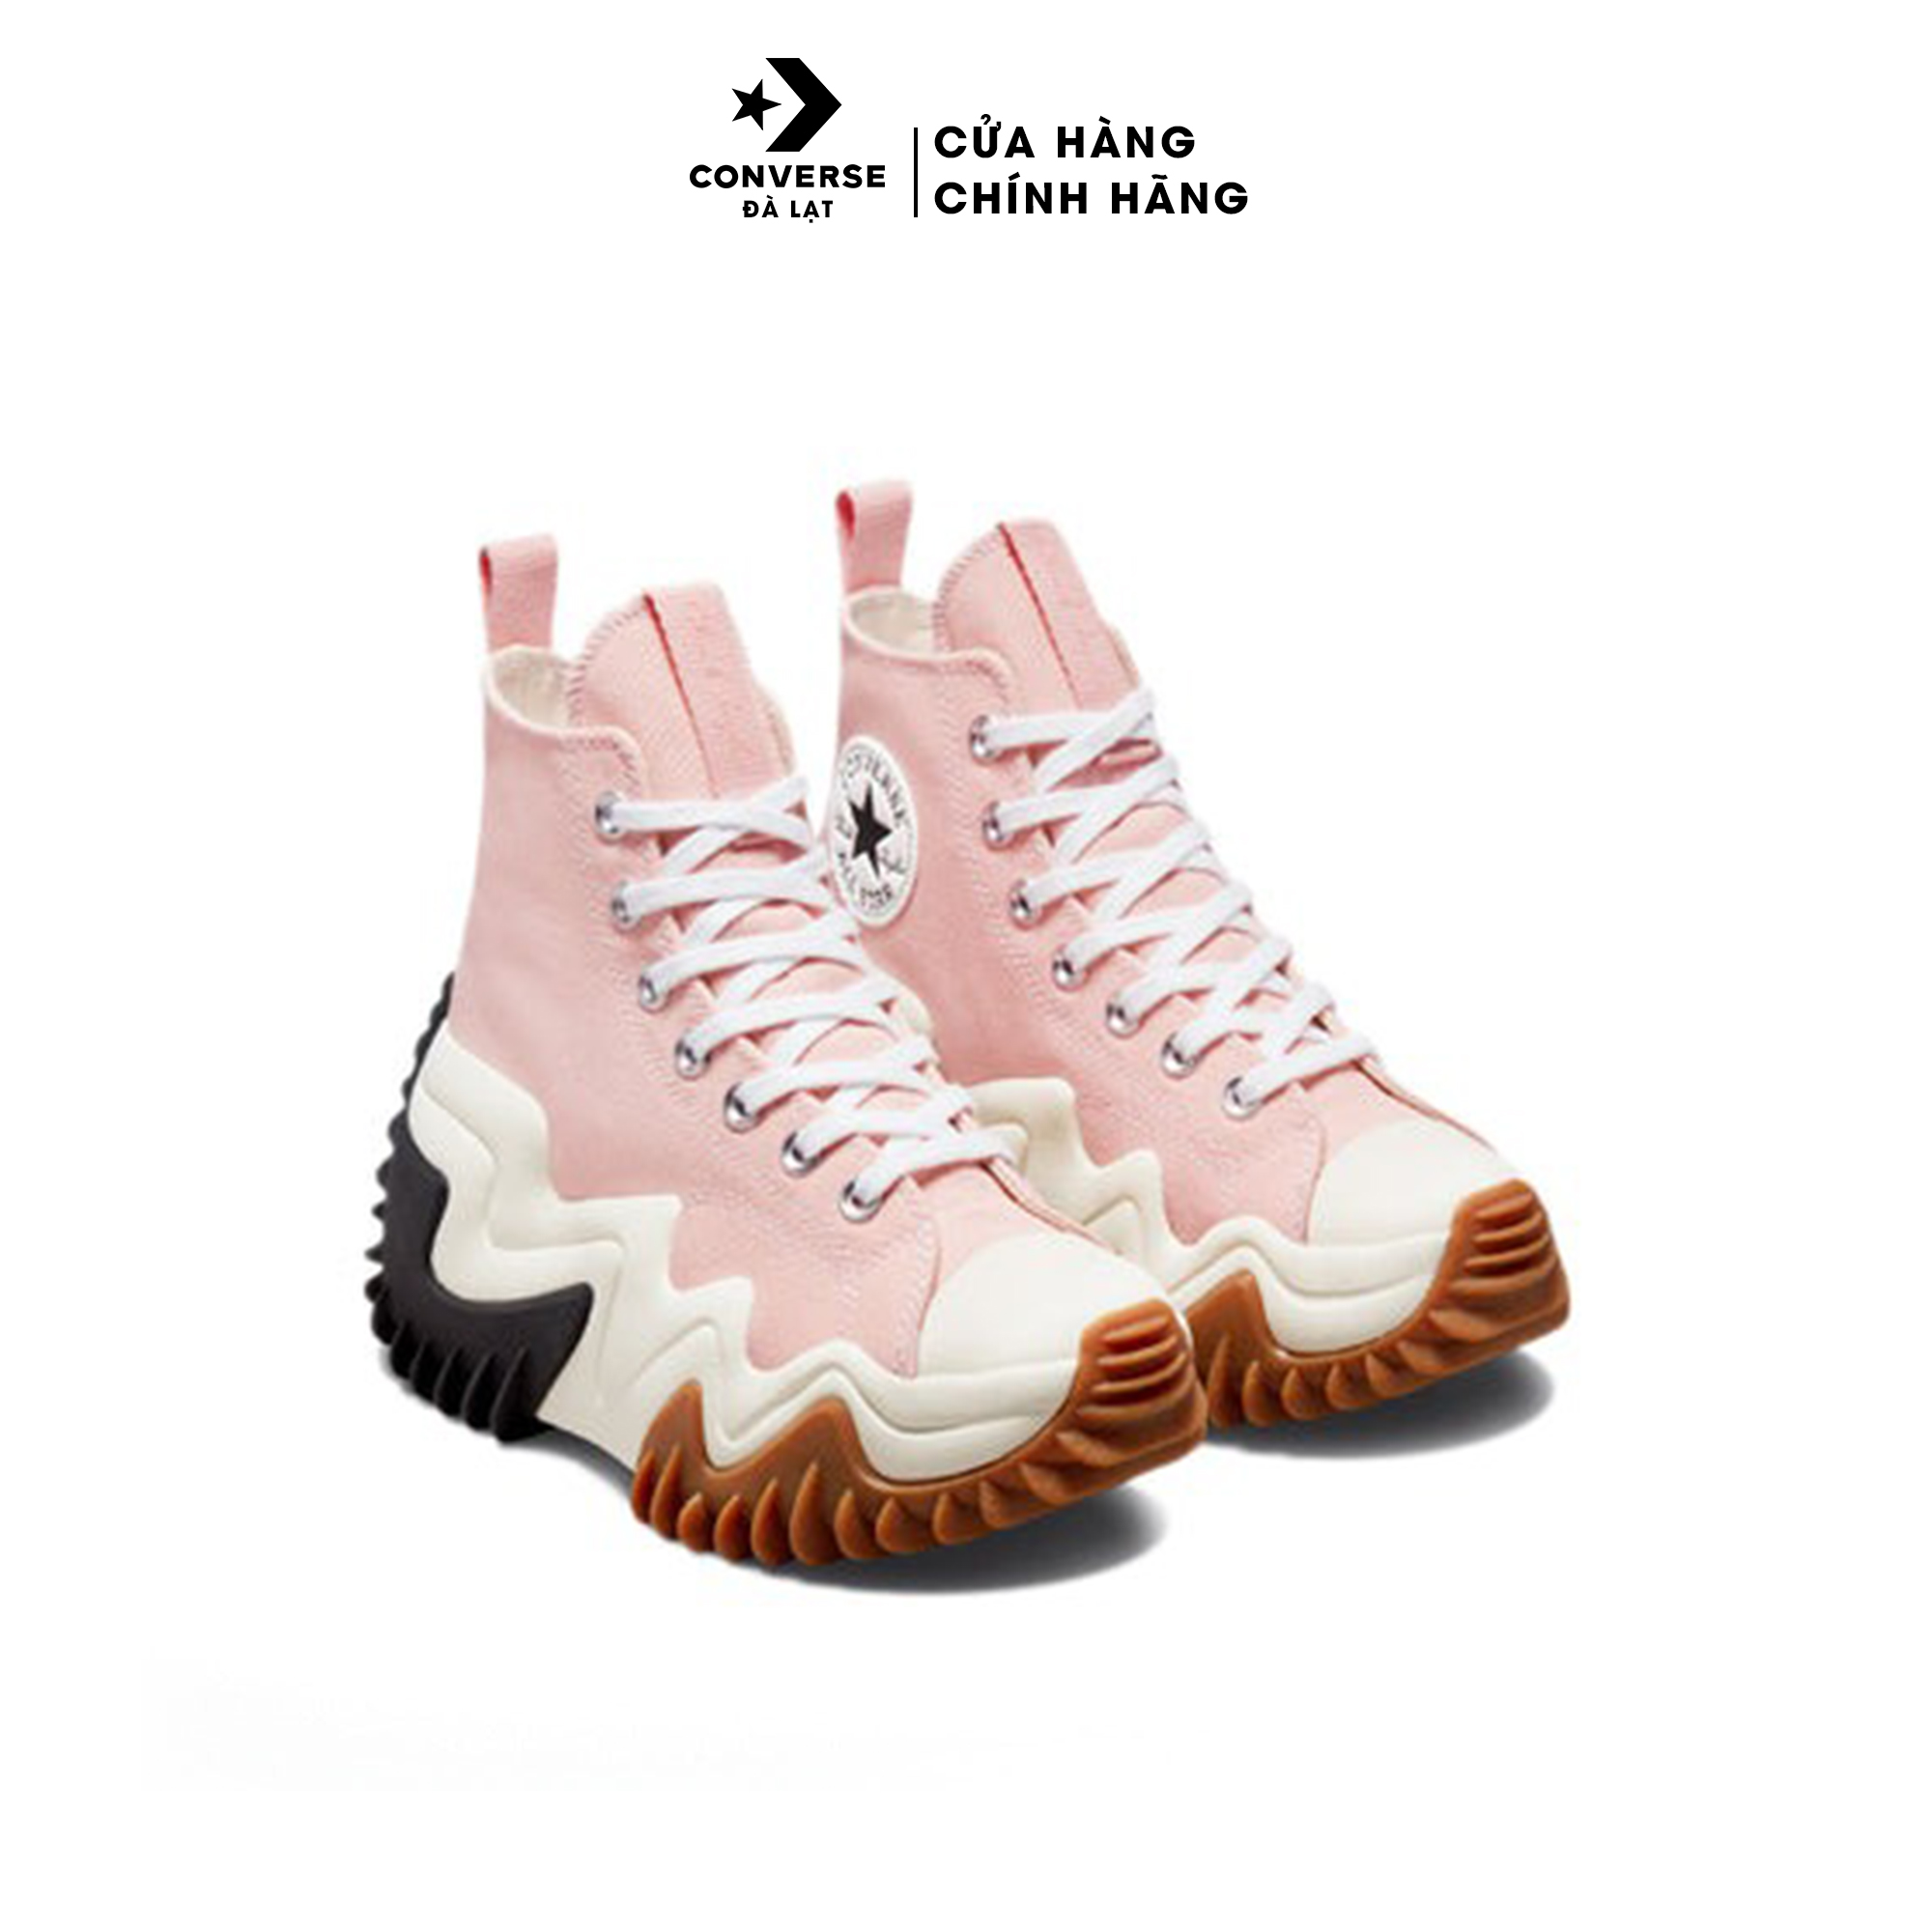 Giày Converse cao cổ đế độn nguyên khối màu hồng Run Star Motion High 'Storm Pink' - 172247C